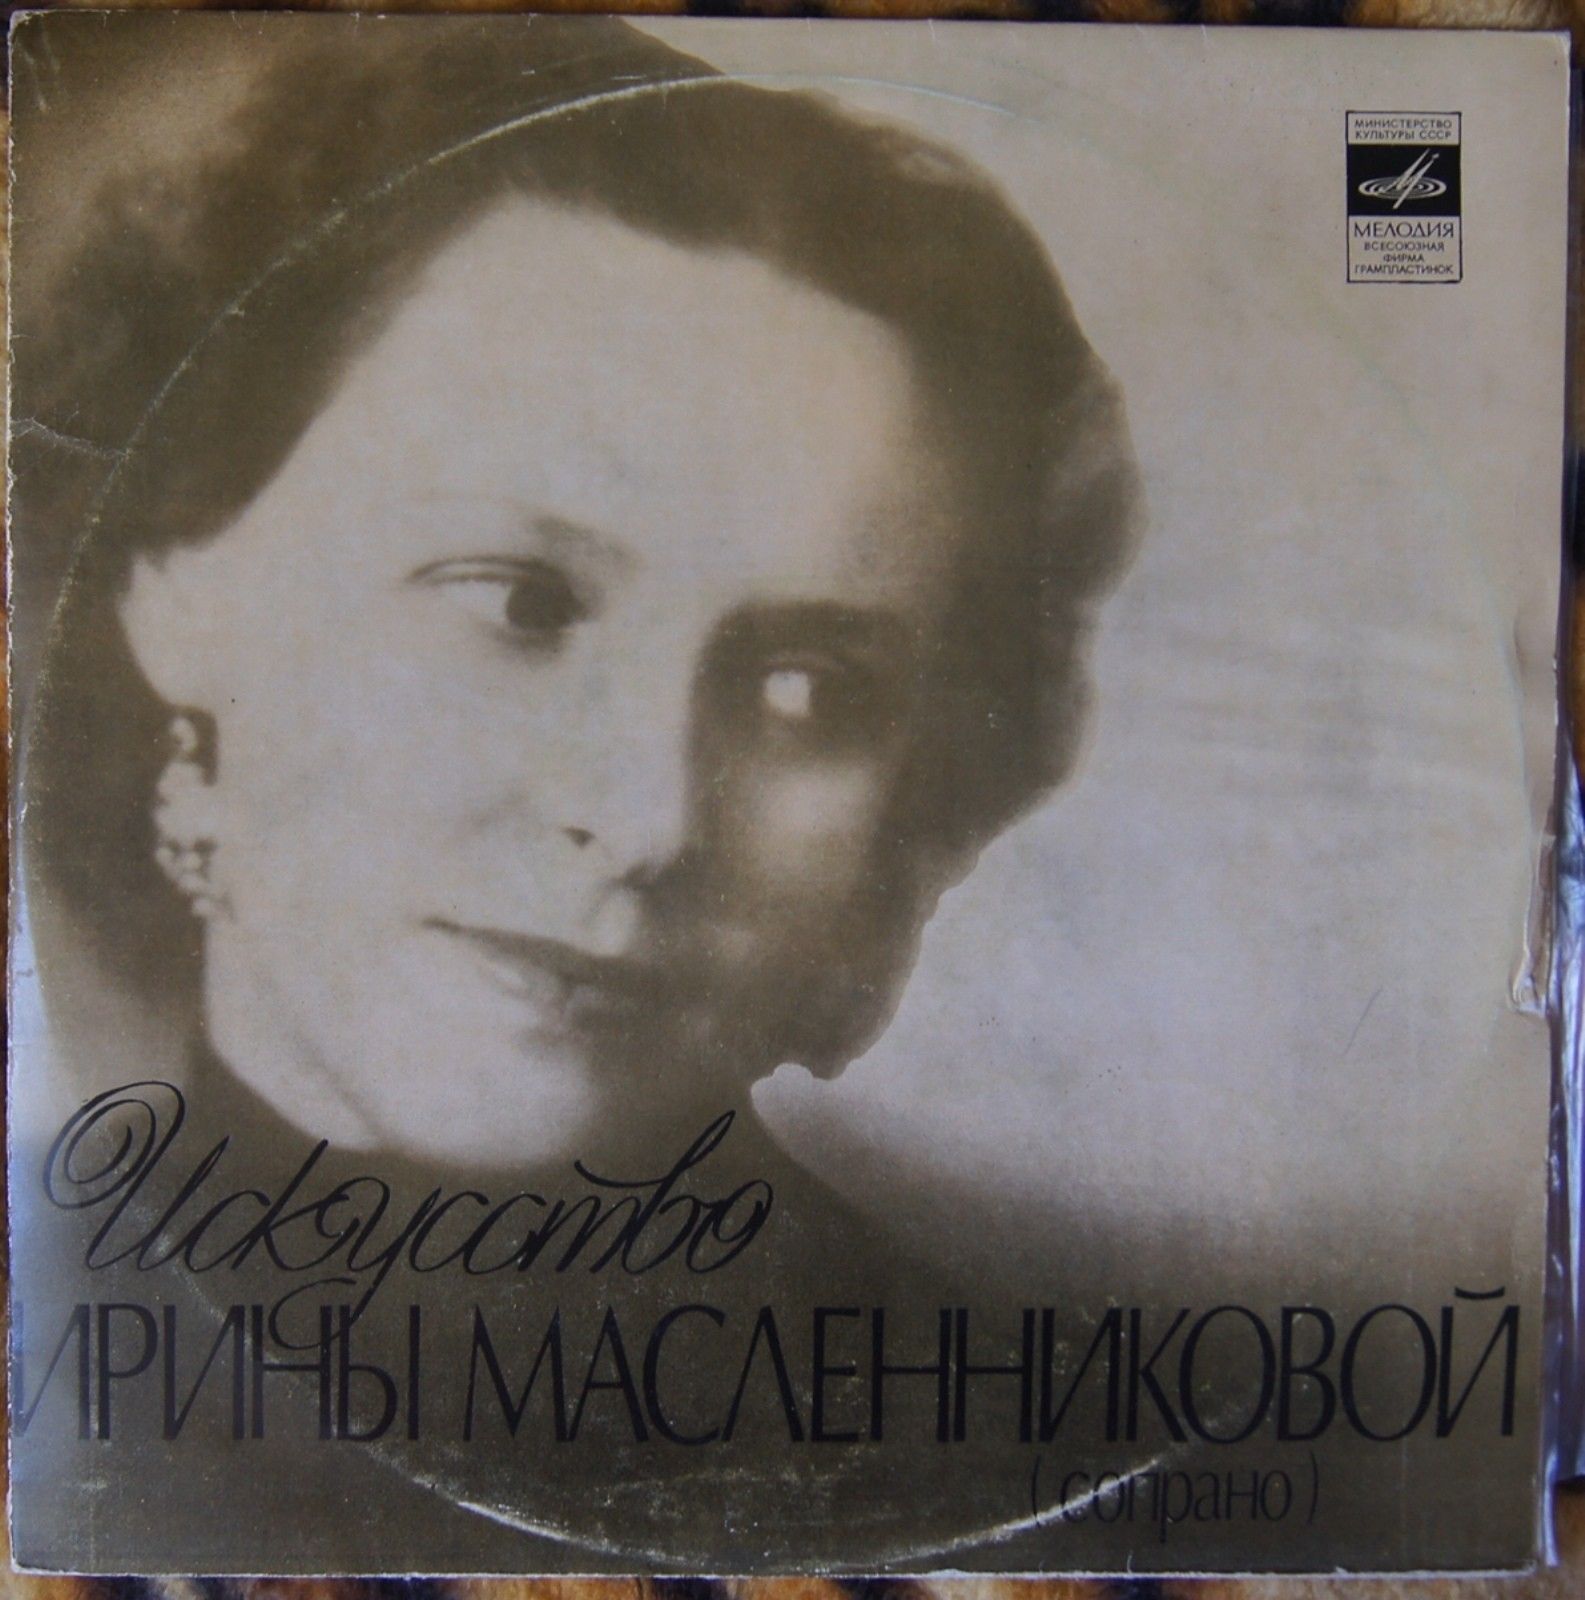 Ирина МАСЛЕННИКОВА, сопрано. Архивные записи